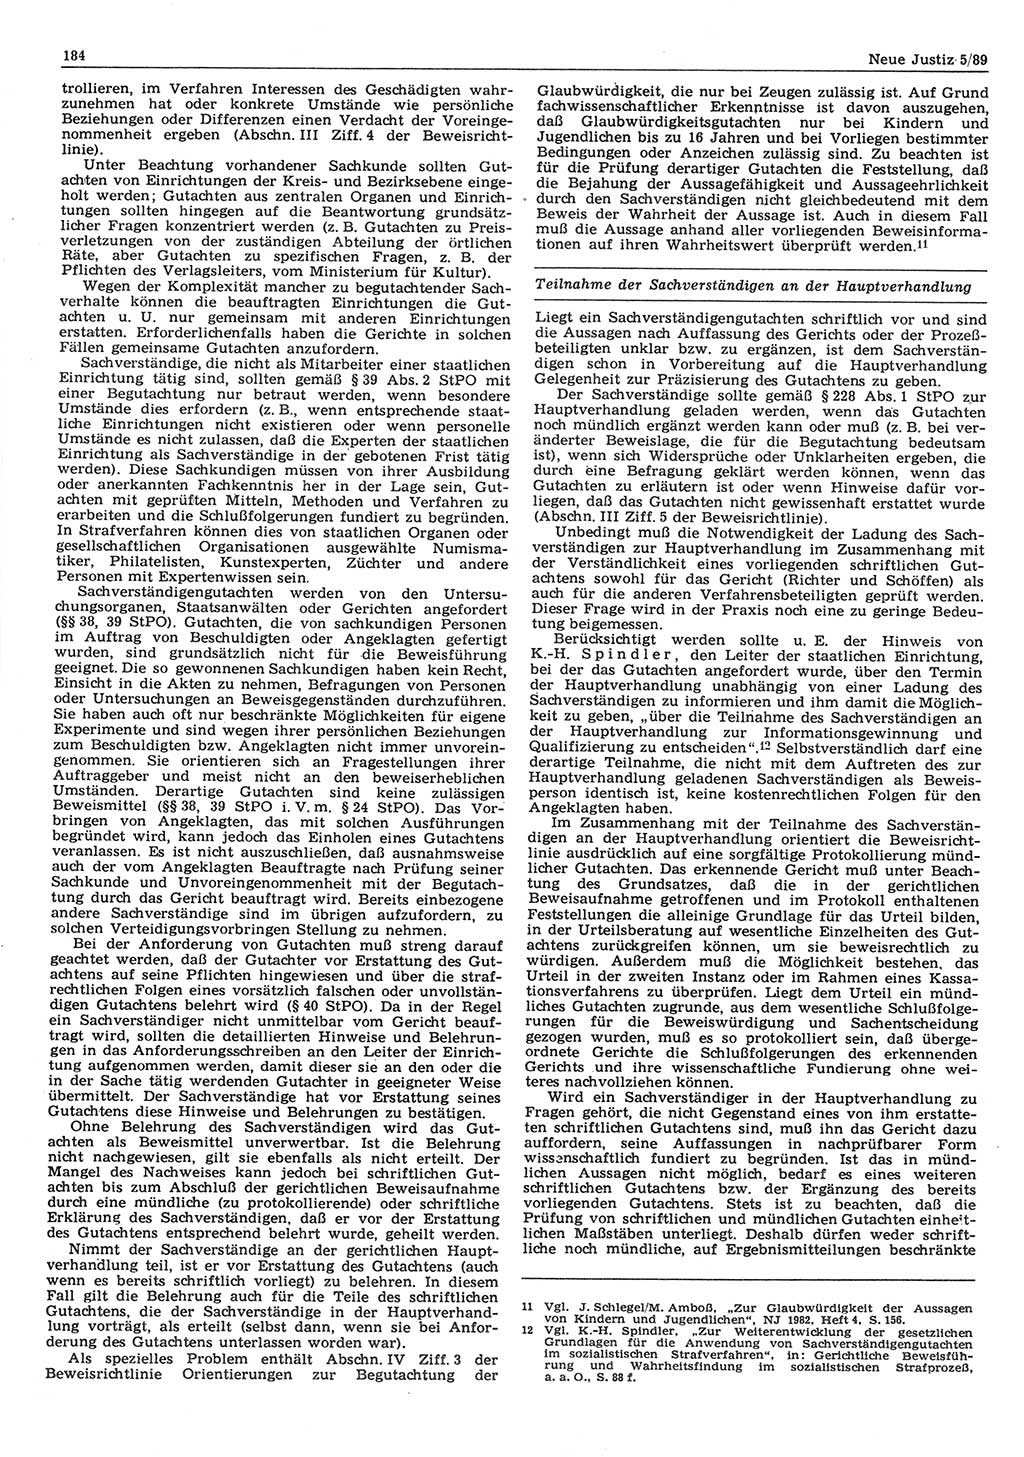 Neue Justiz (NJ), Zeitschrift für sozialistisches Recht und Gesetzlichkeit [Deutsche Demokratische Republik (DDR)], 43. Jahrgang 1989, Seite 184 (NJ DDR 1989, S. 184)